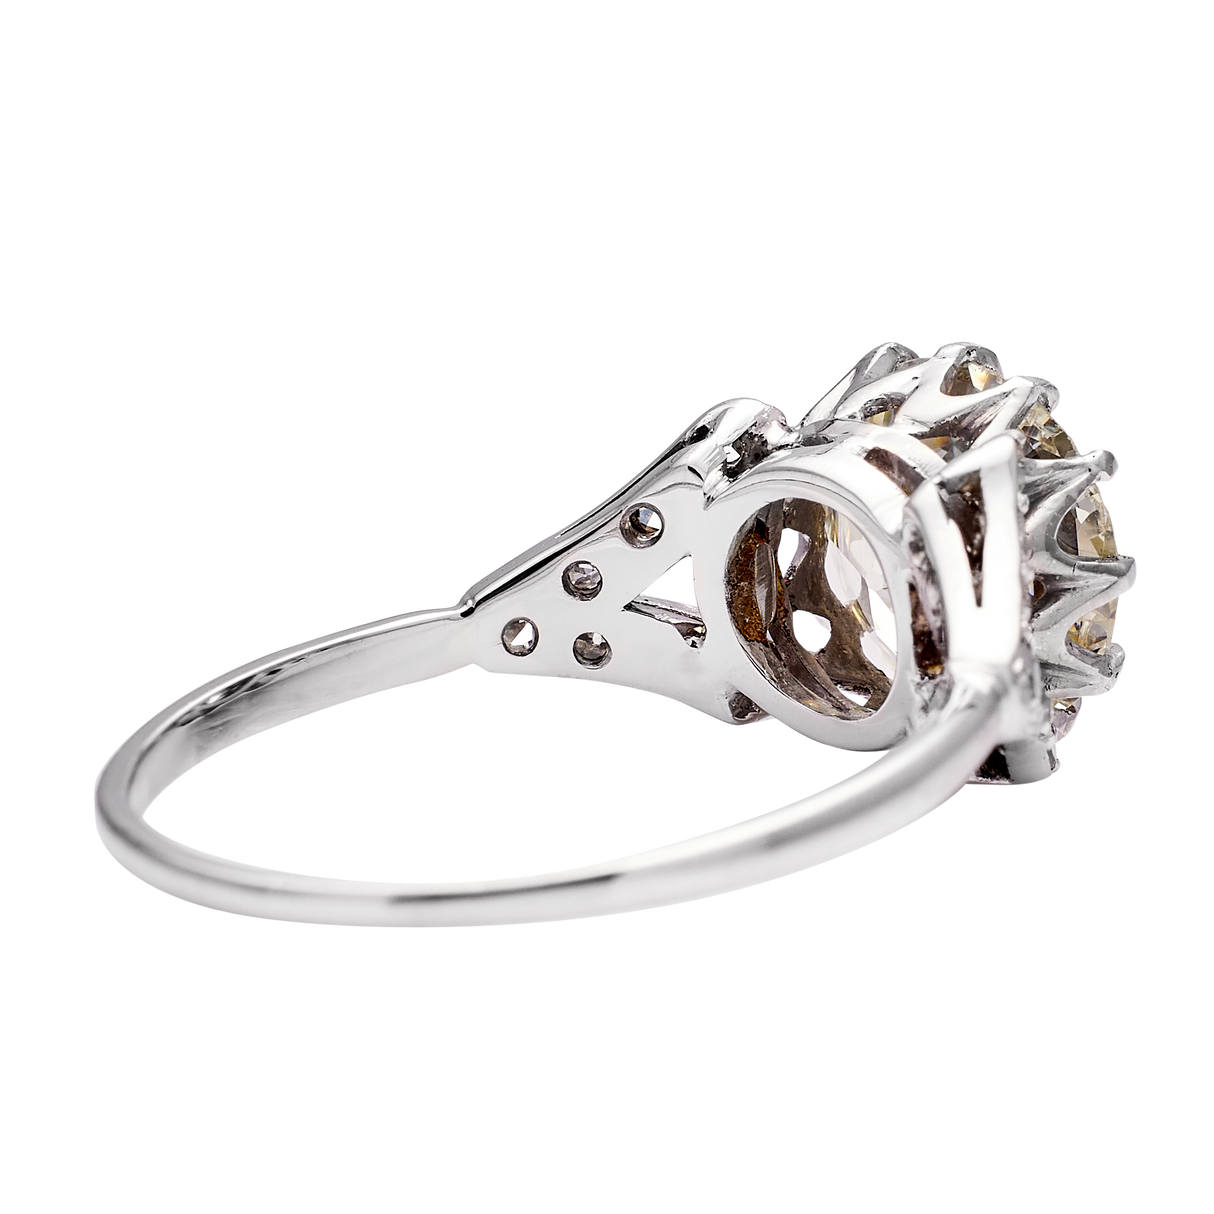 Antique, 2.2ct round-cut diamond solitaire engagement ring, platinum